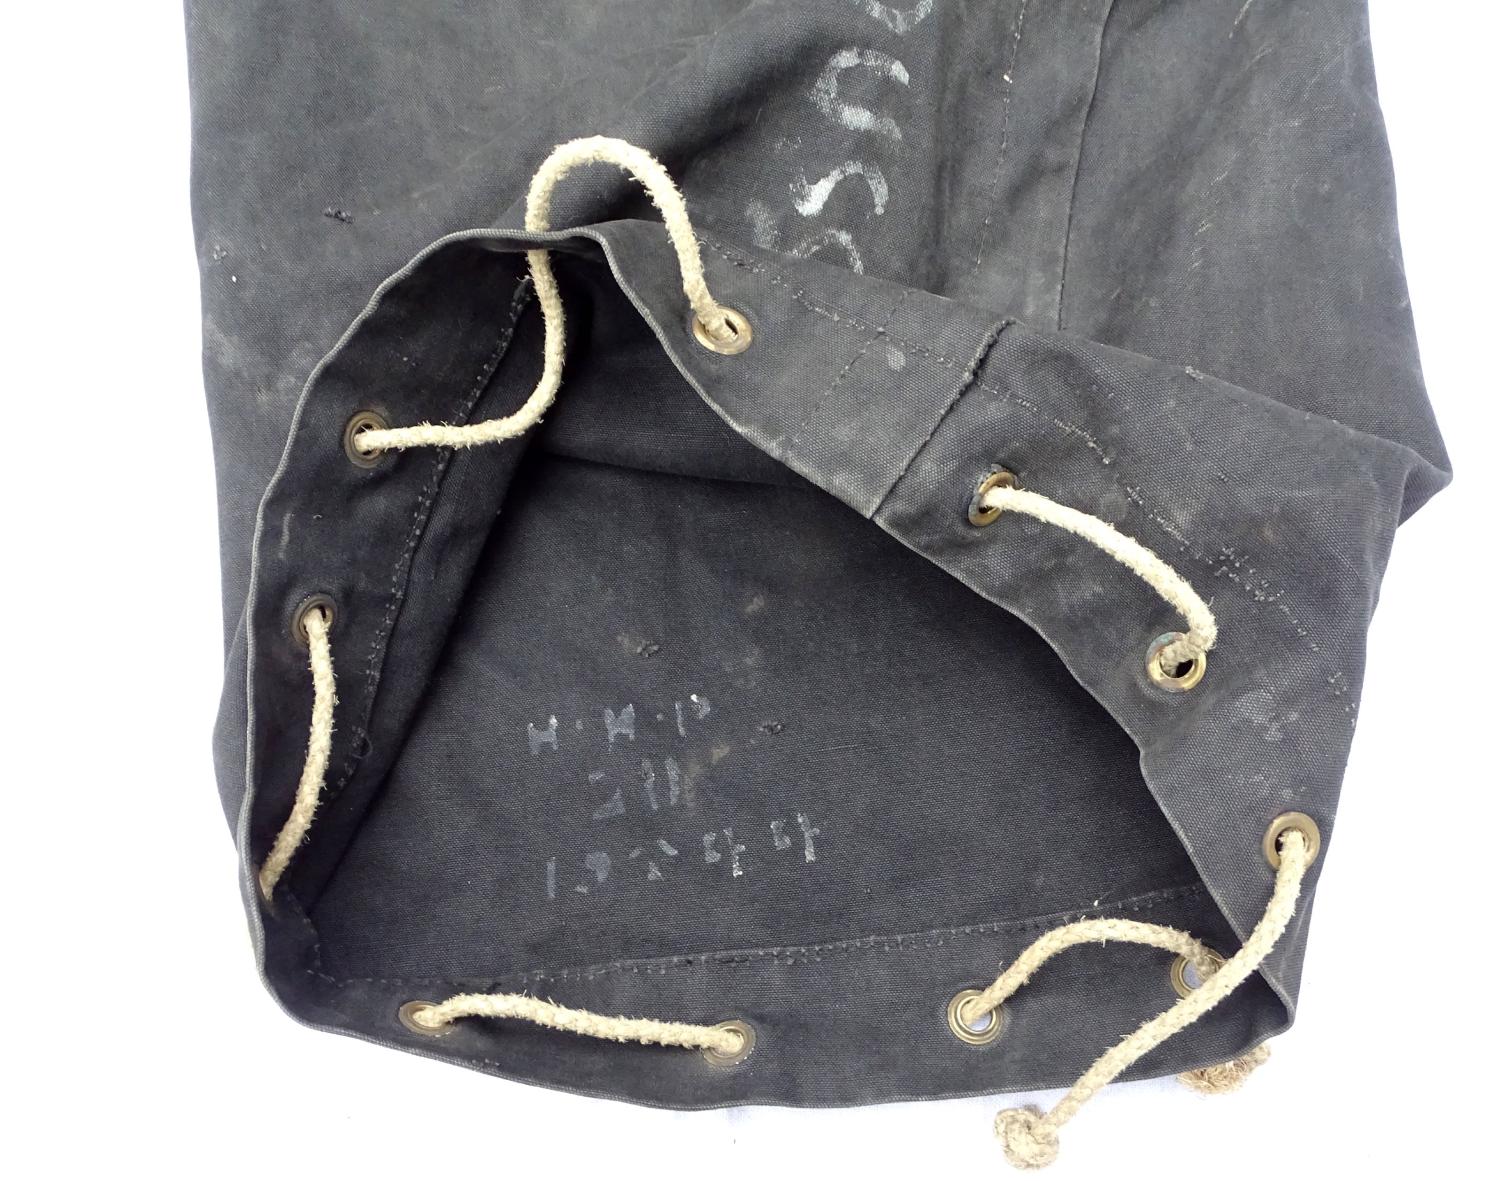 Kit bag en toile noire. British 1944